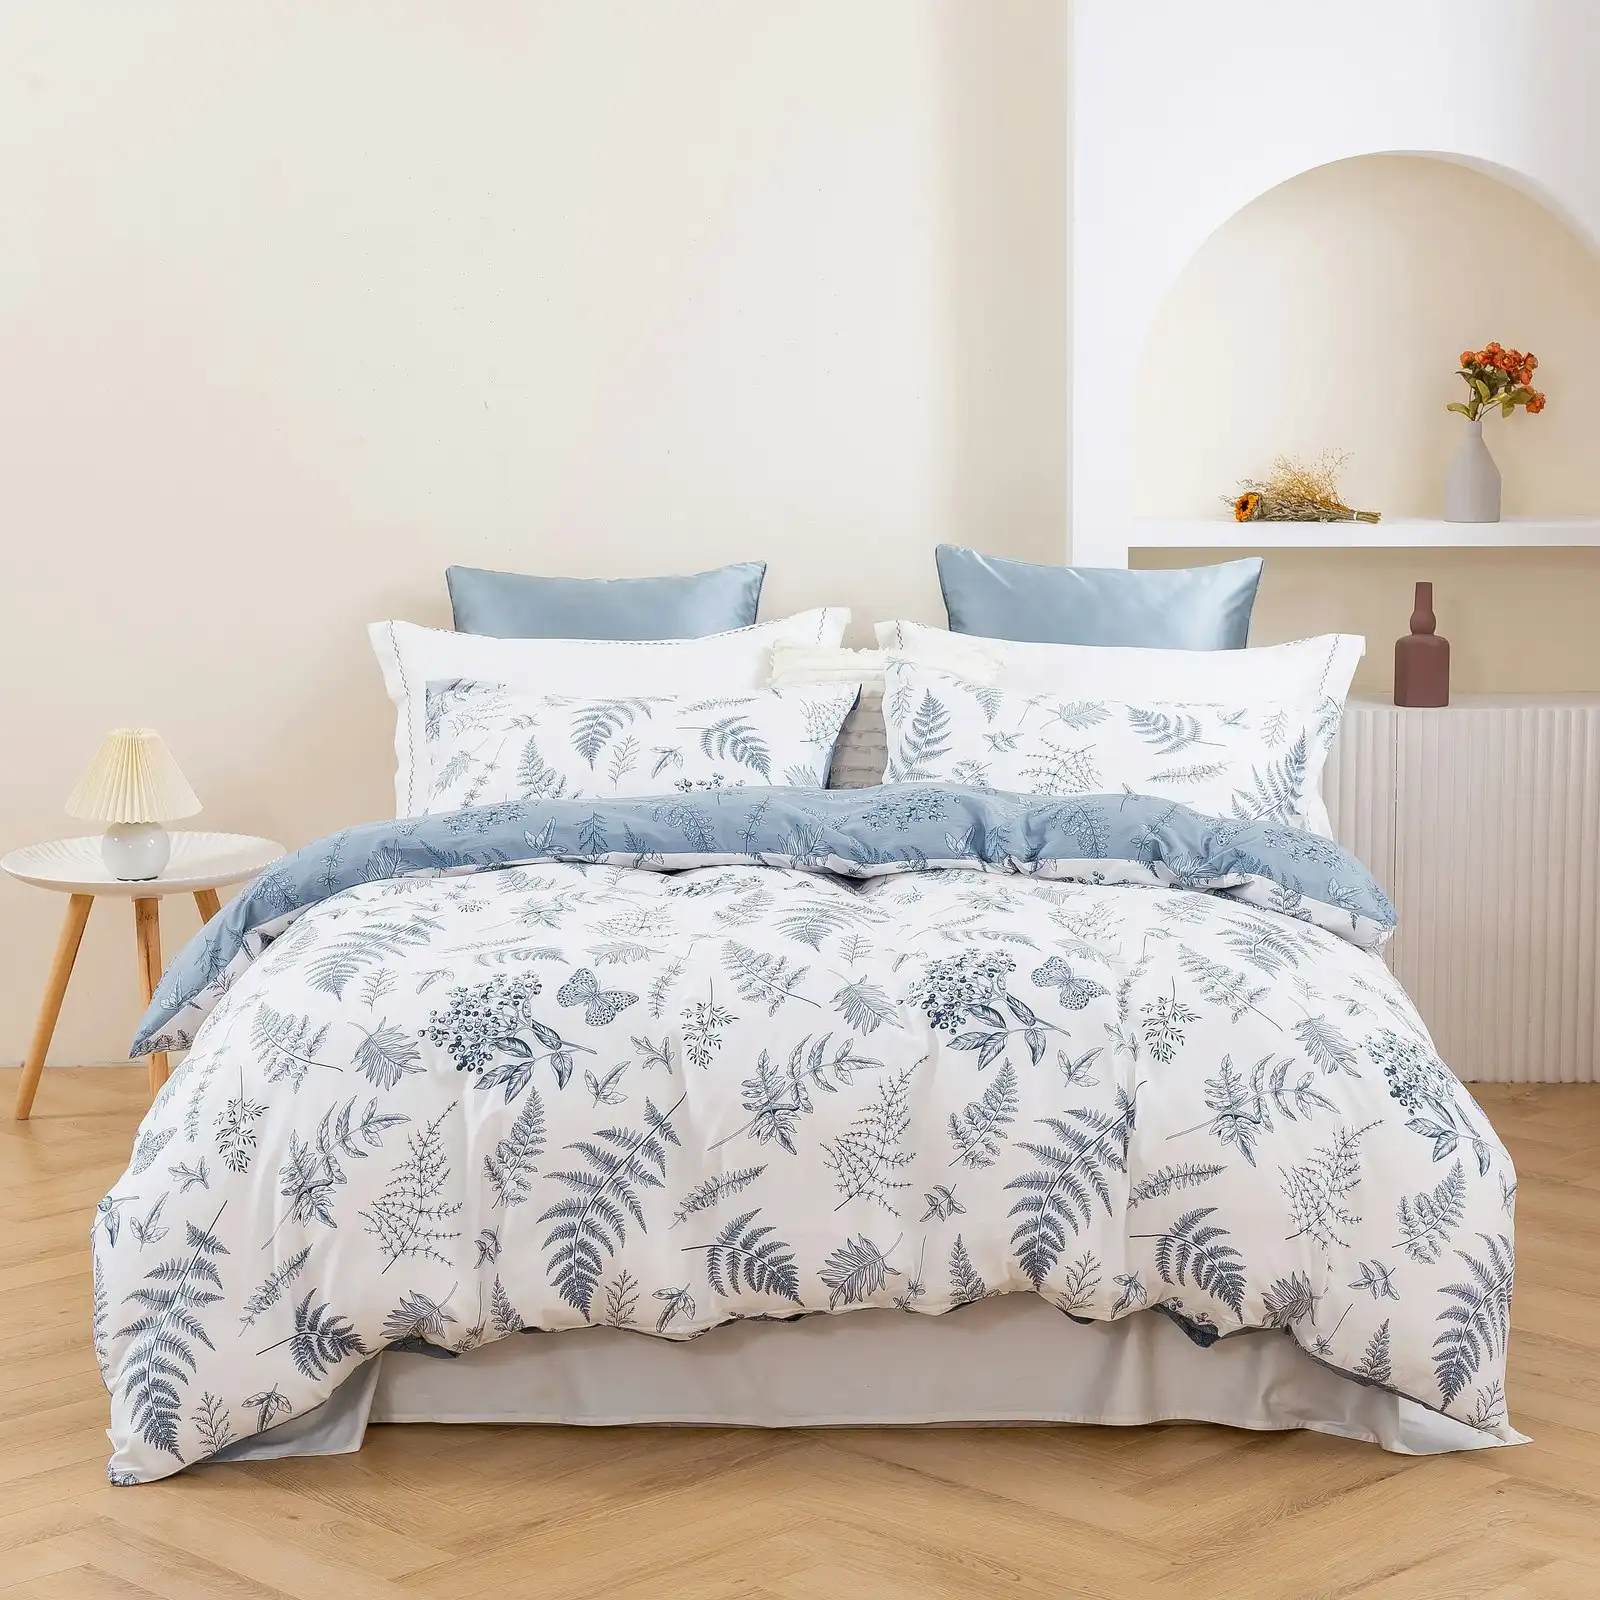 Dreamaker Daphne 100% Cotton Reversible Quilt Cover Set Double Bed